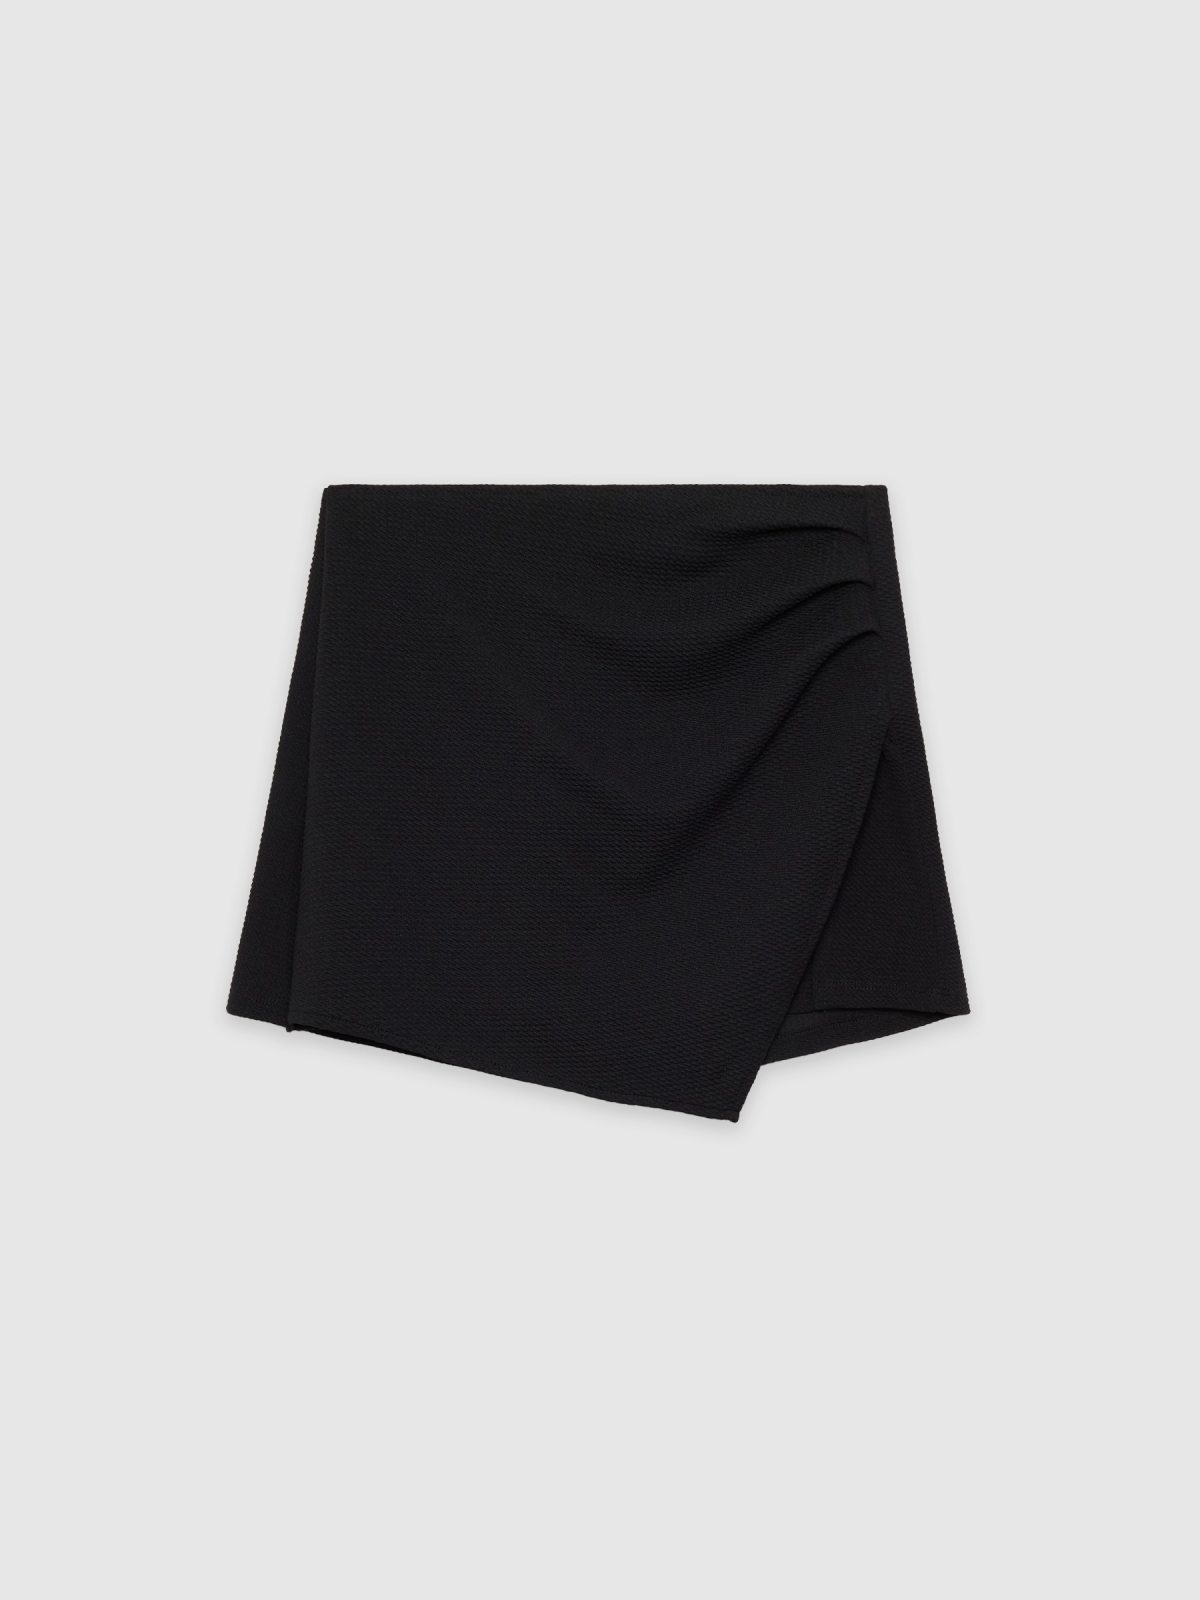  Mini skort skirt black